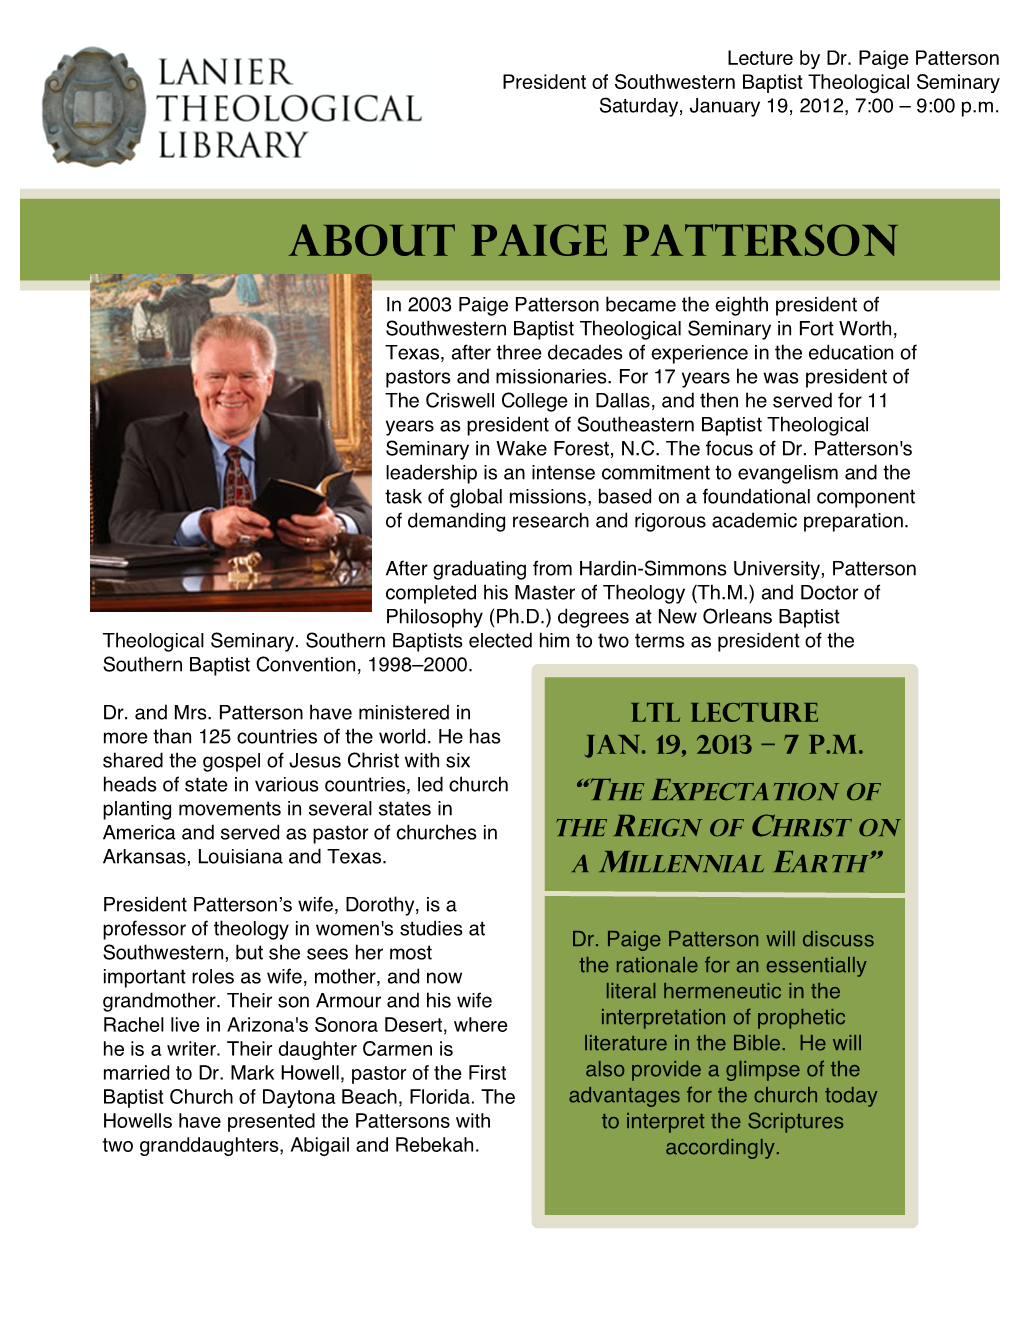 About Paige Patterson